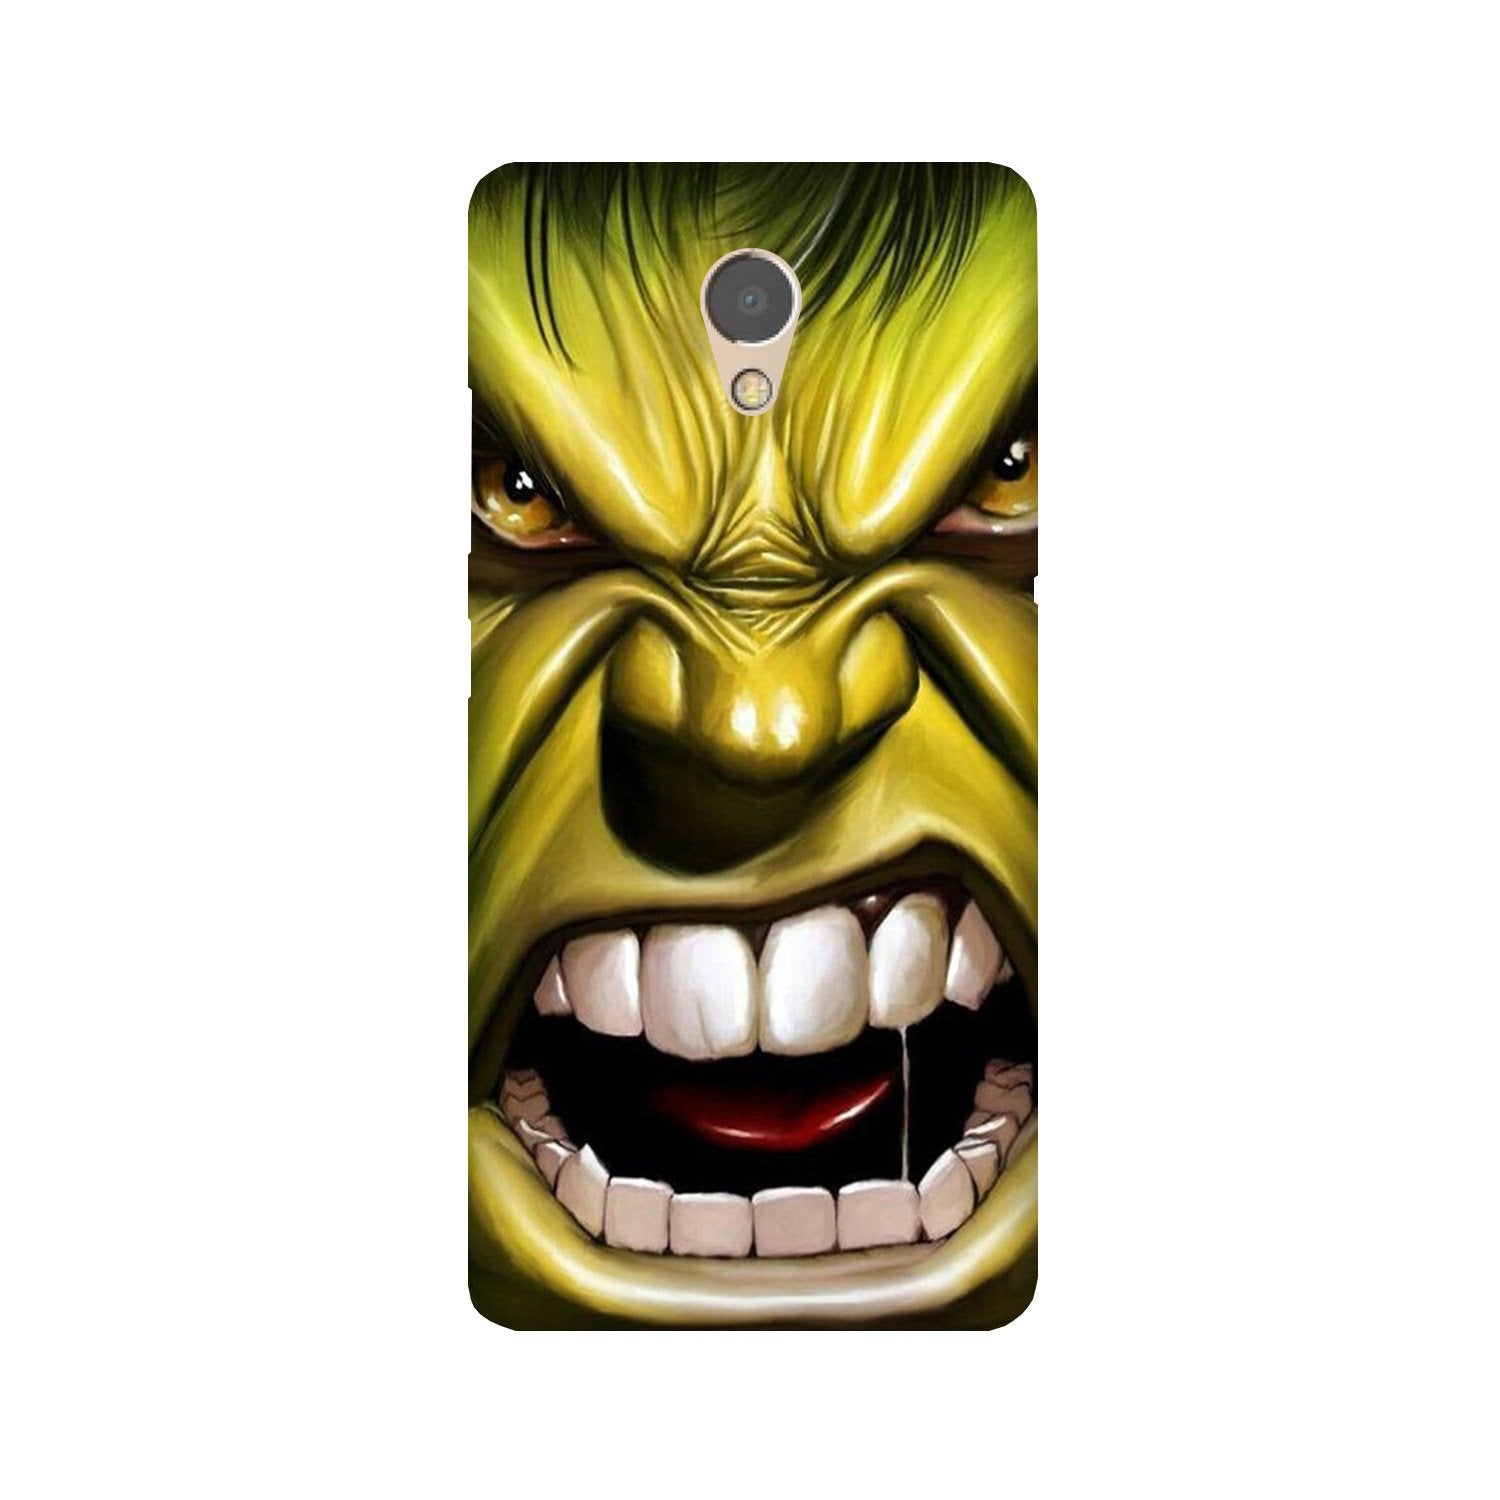 Hulk Superhero Case for Lenovo P2(Design - 121)